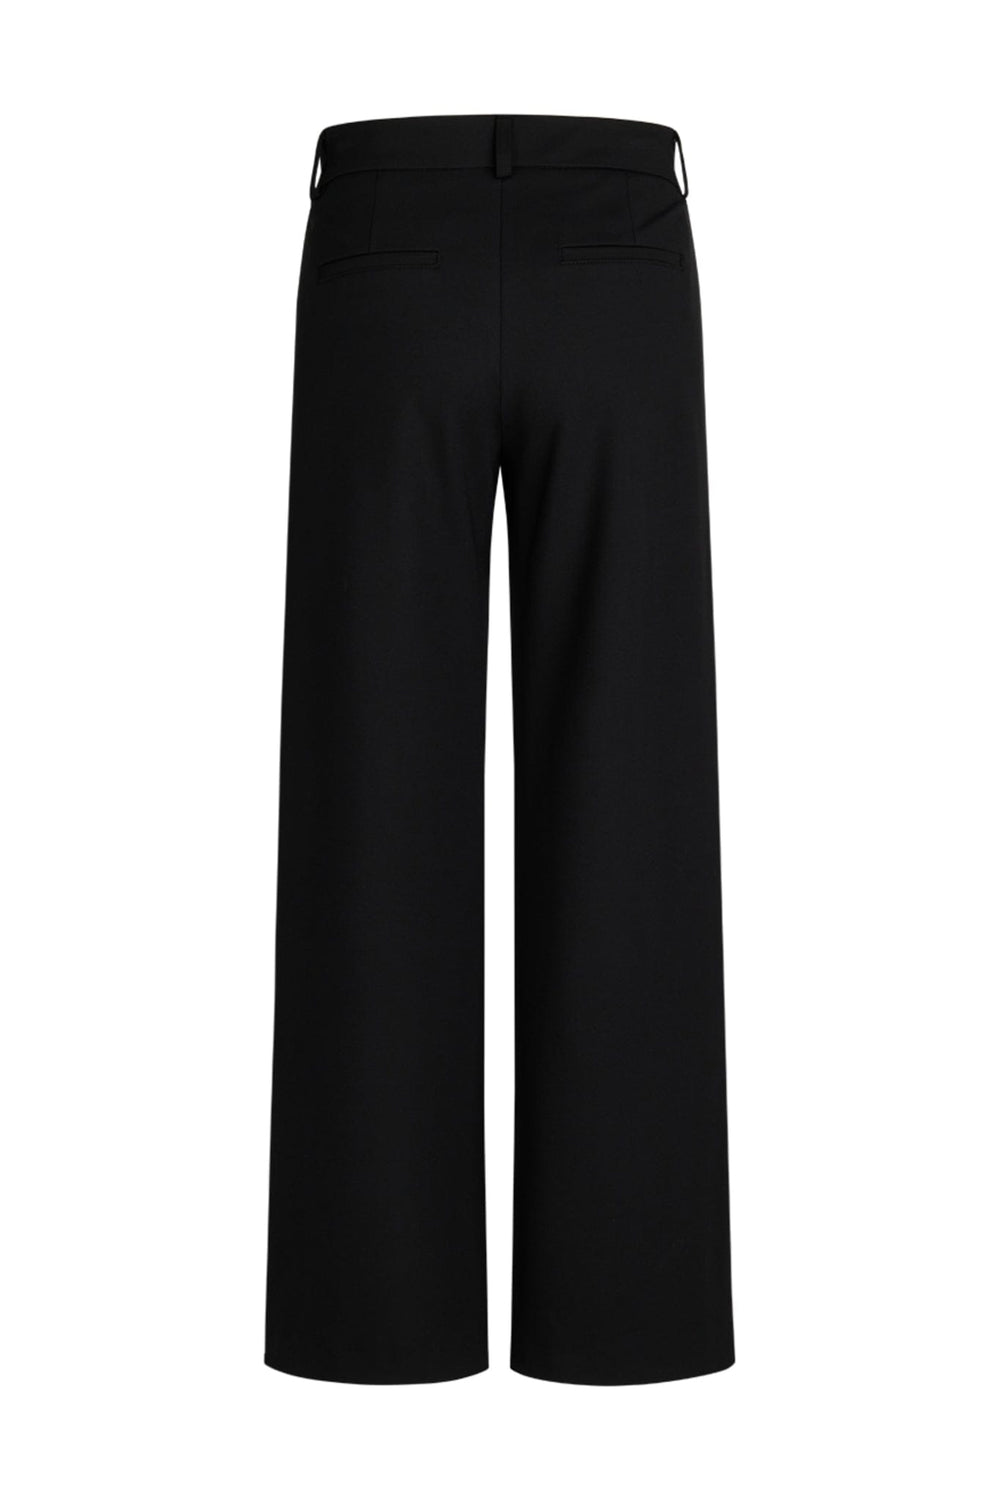 Tarita Trousers S Black | Bukser | Smuk - Dameklær på nett